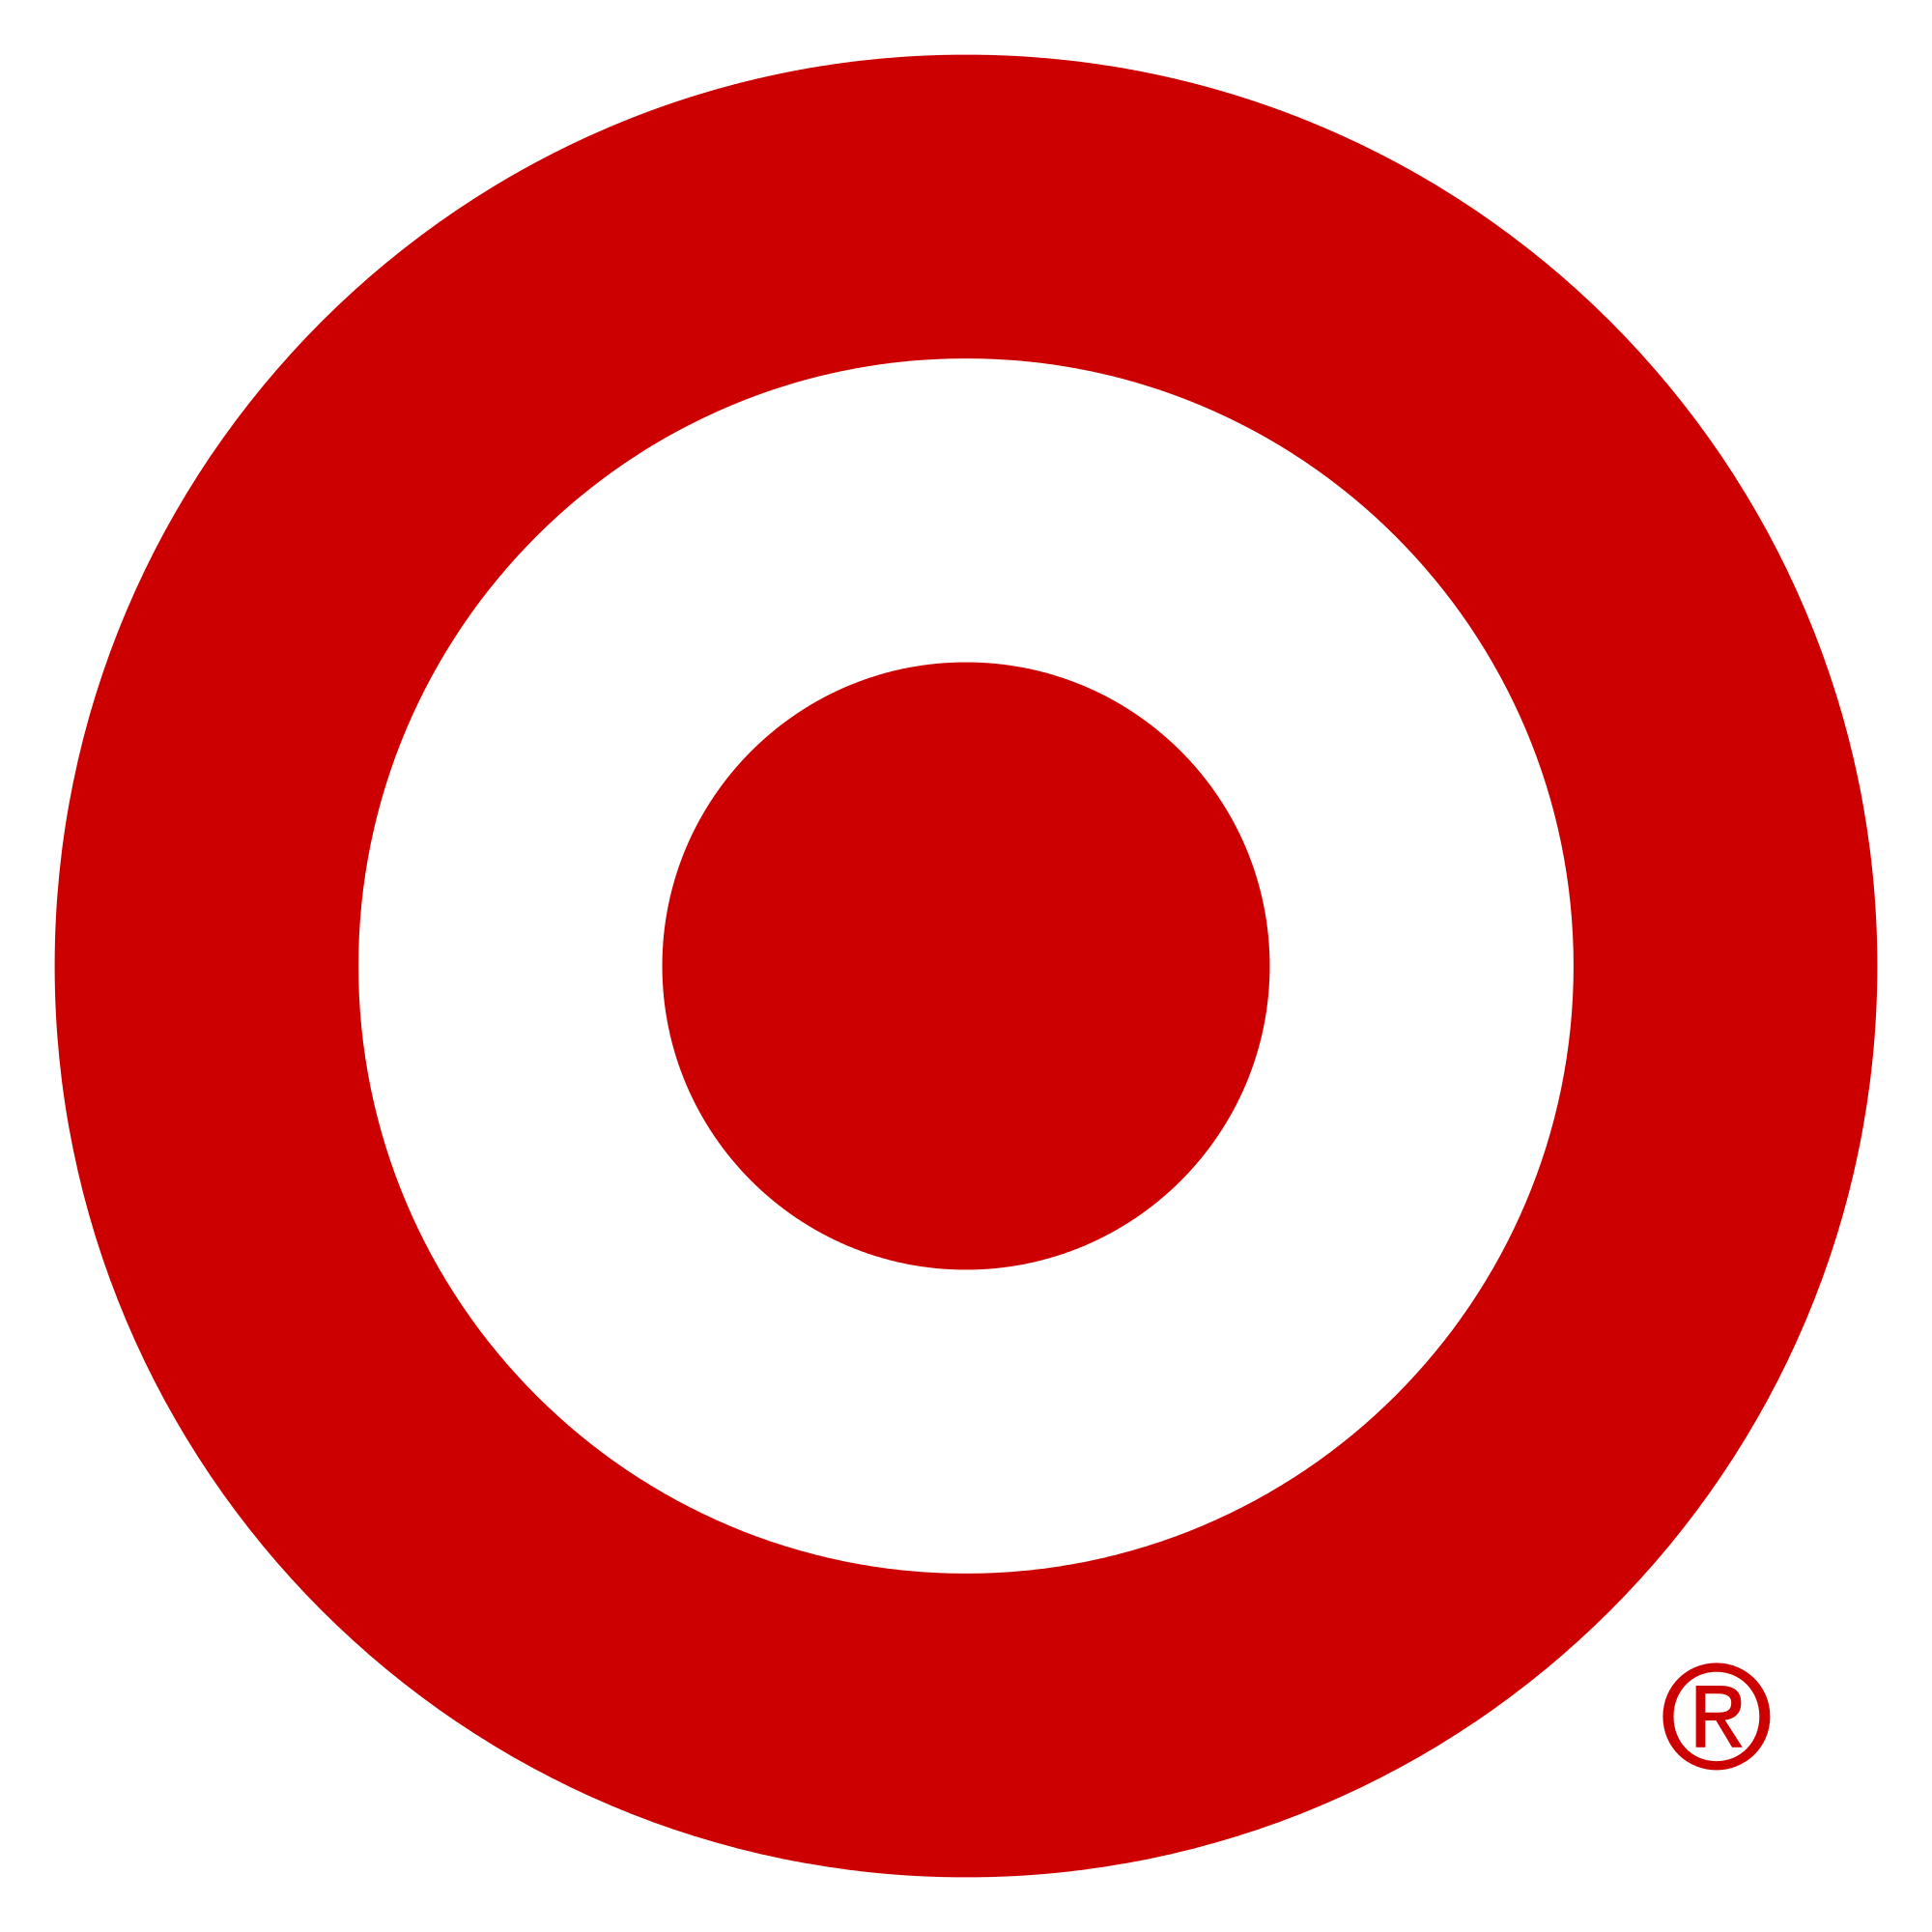 "Target's logo."